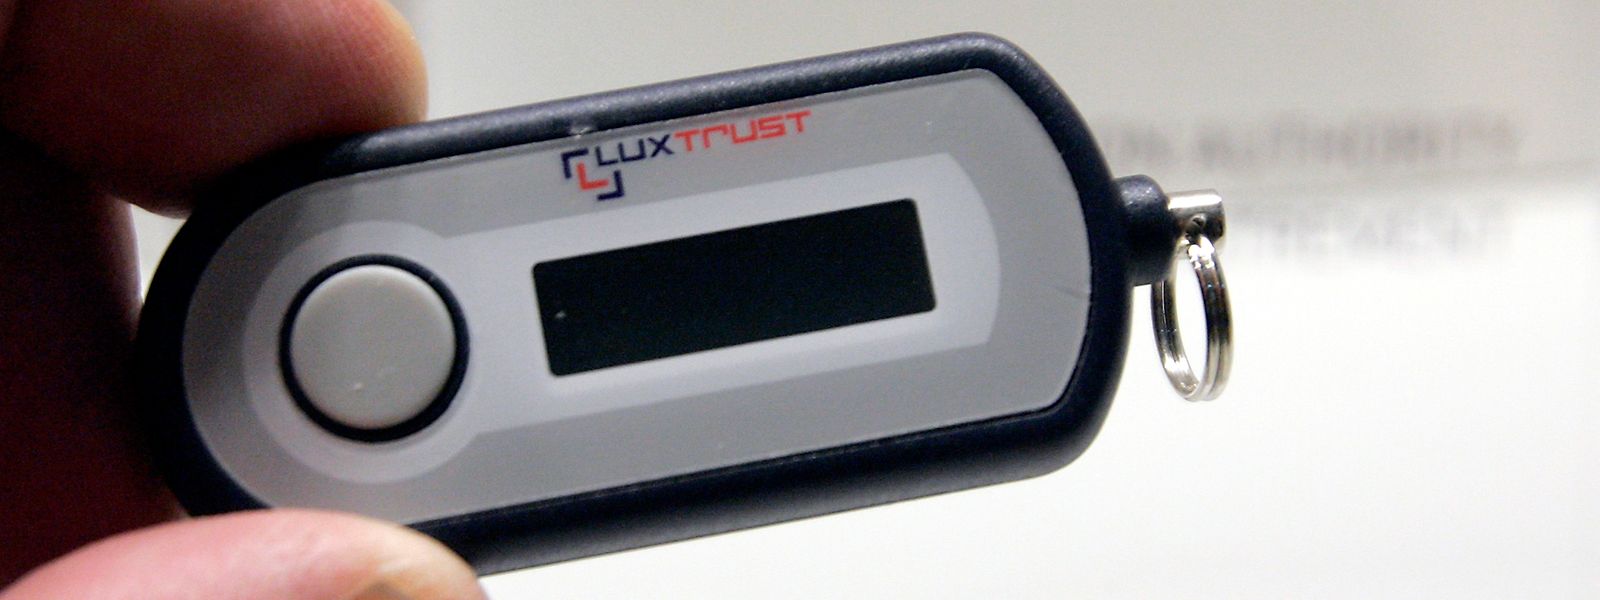 Das Gerät wird nicht deaktiviert und kann unbeschränkt weiter verwendet werden, stellt LuxTrust klar.